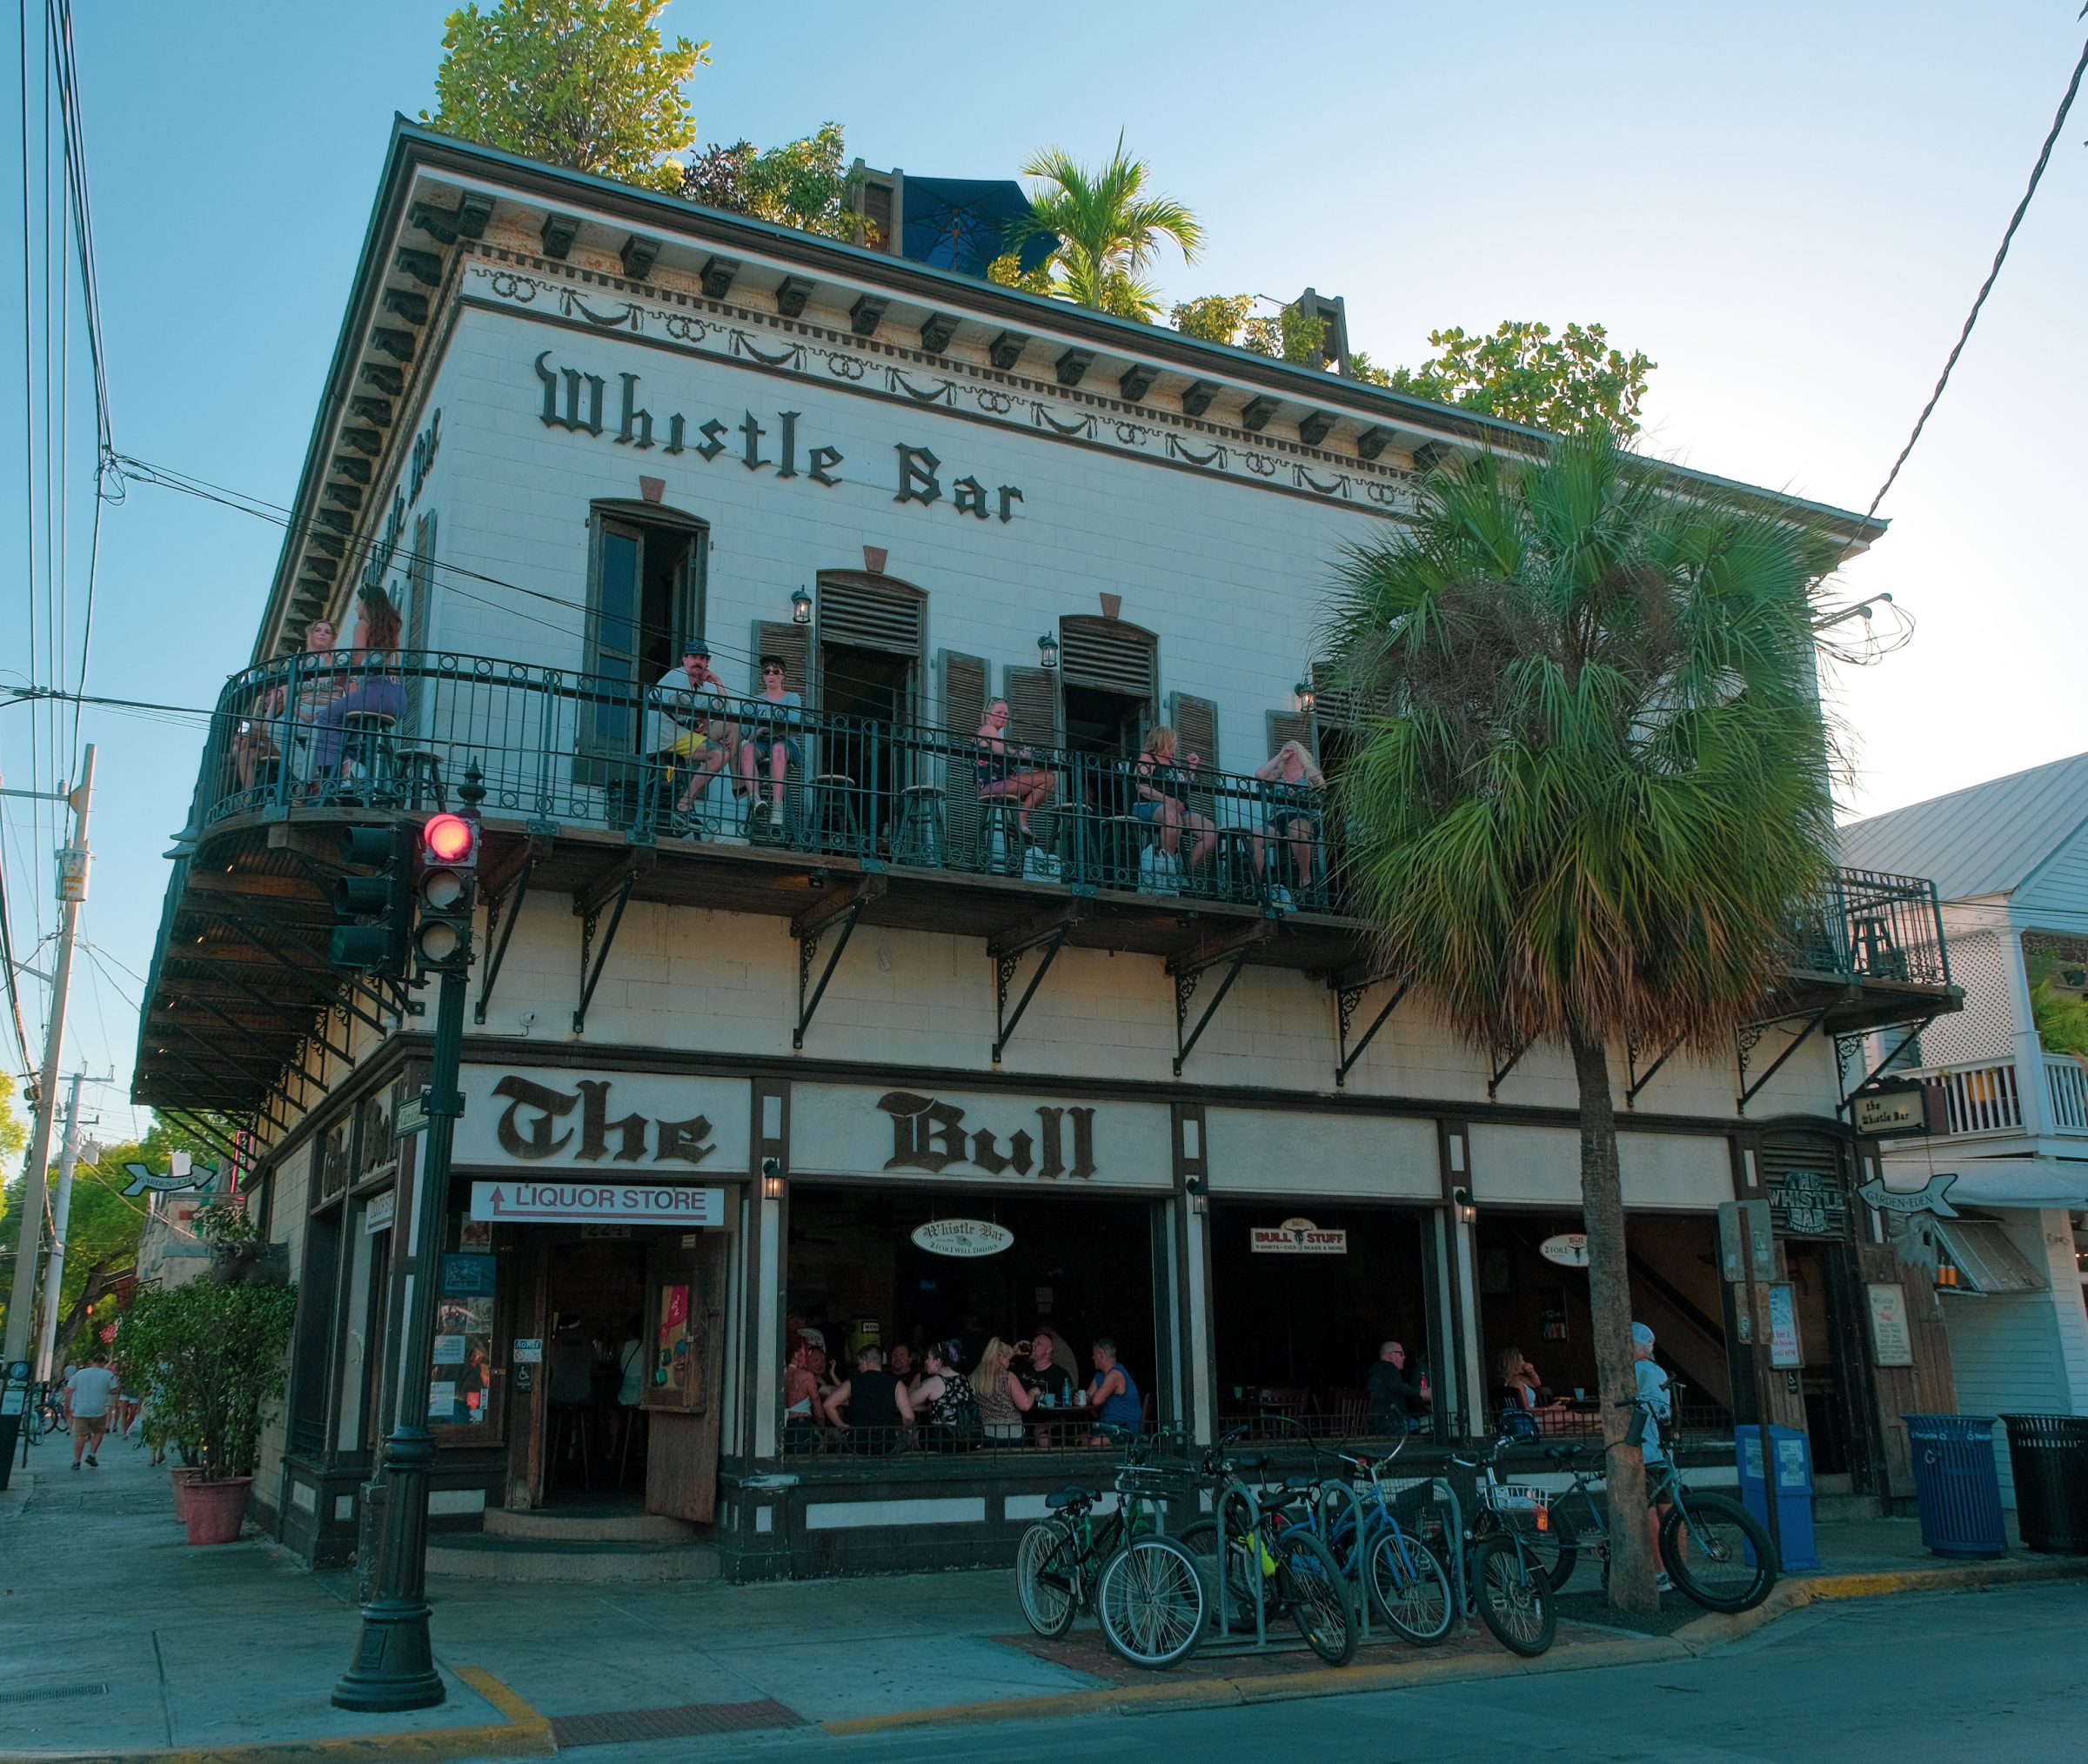 Whistle Bar | Key West